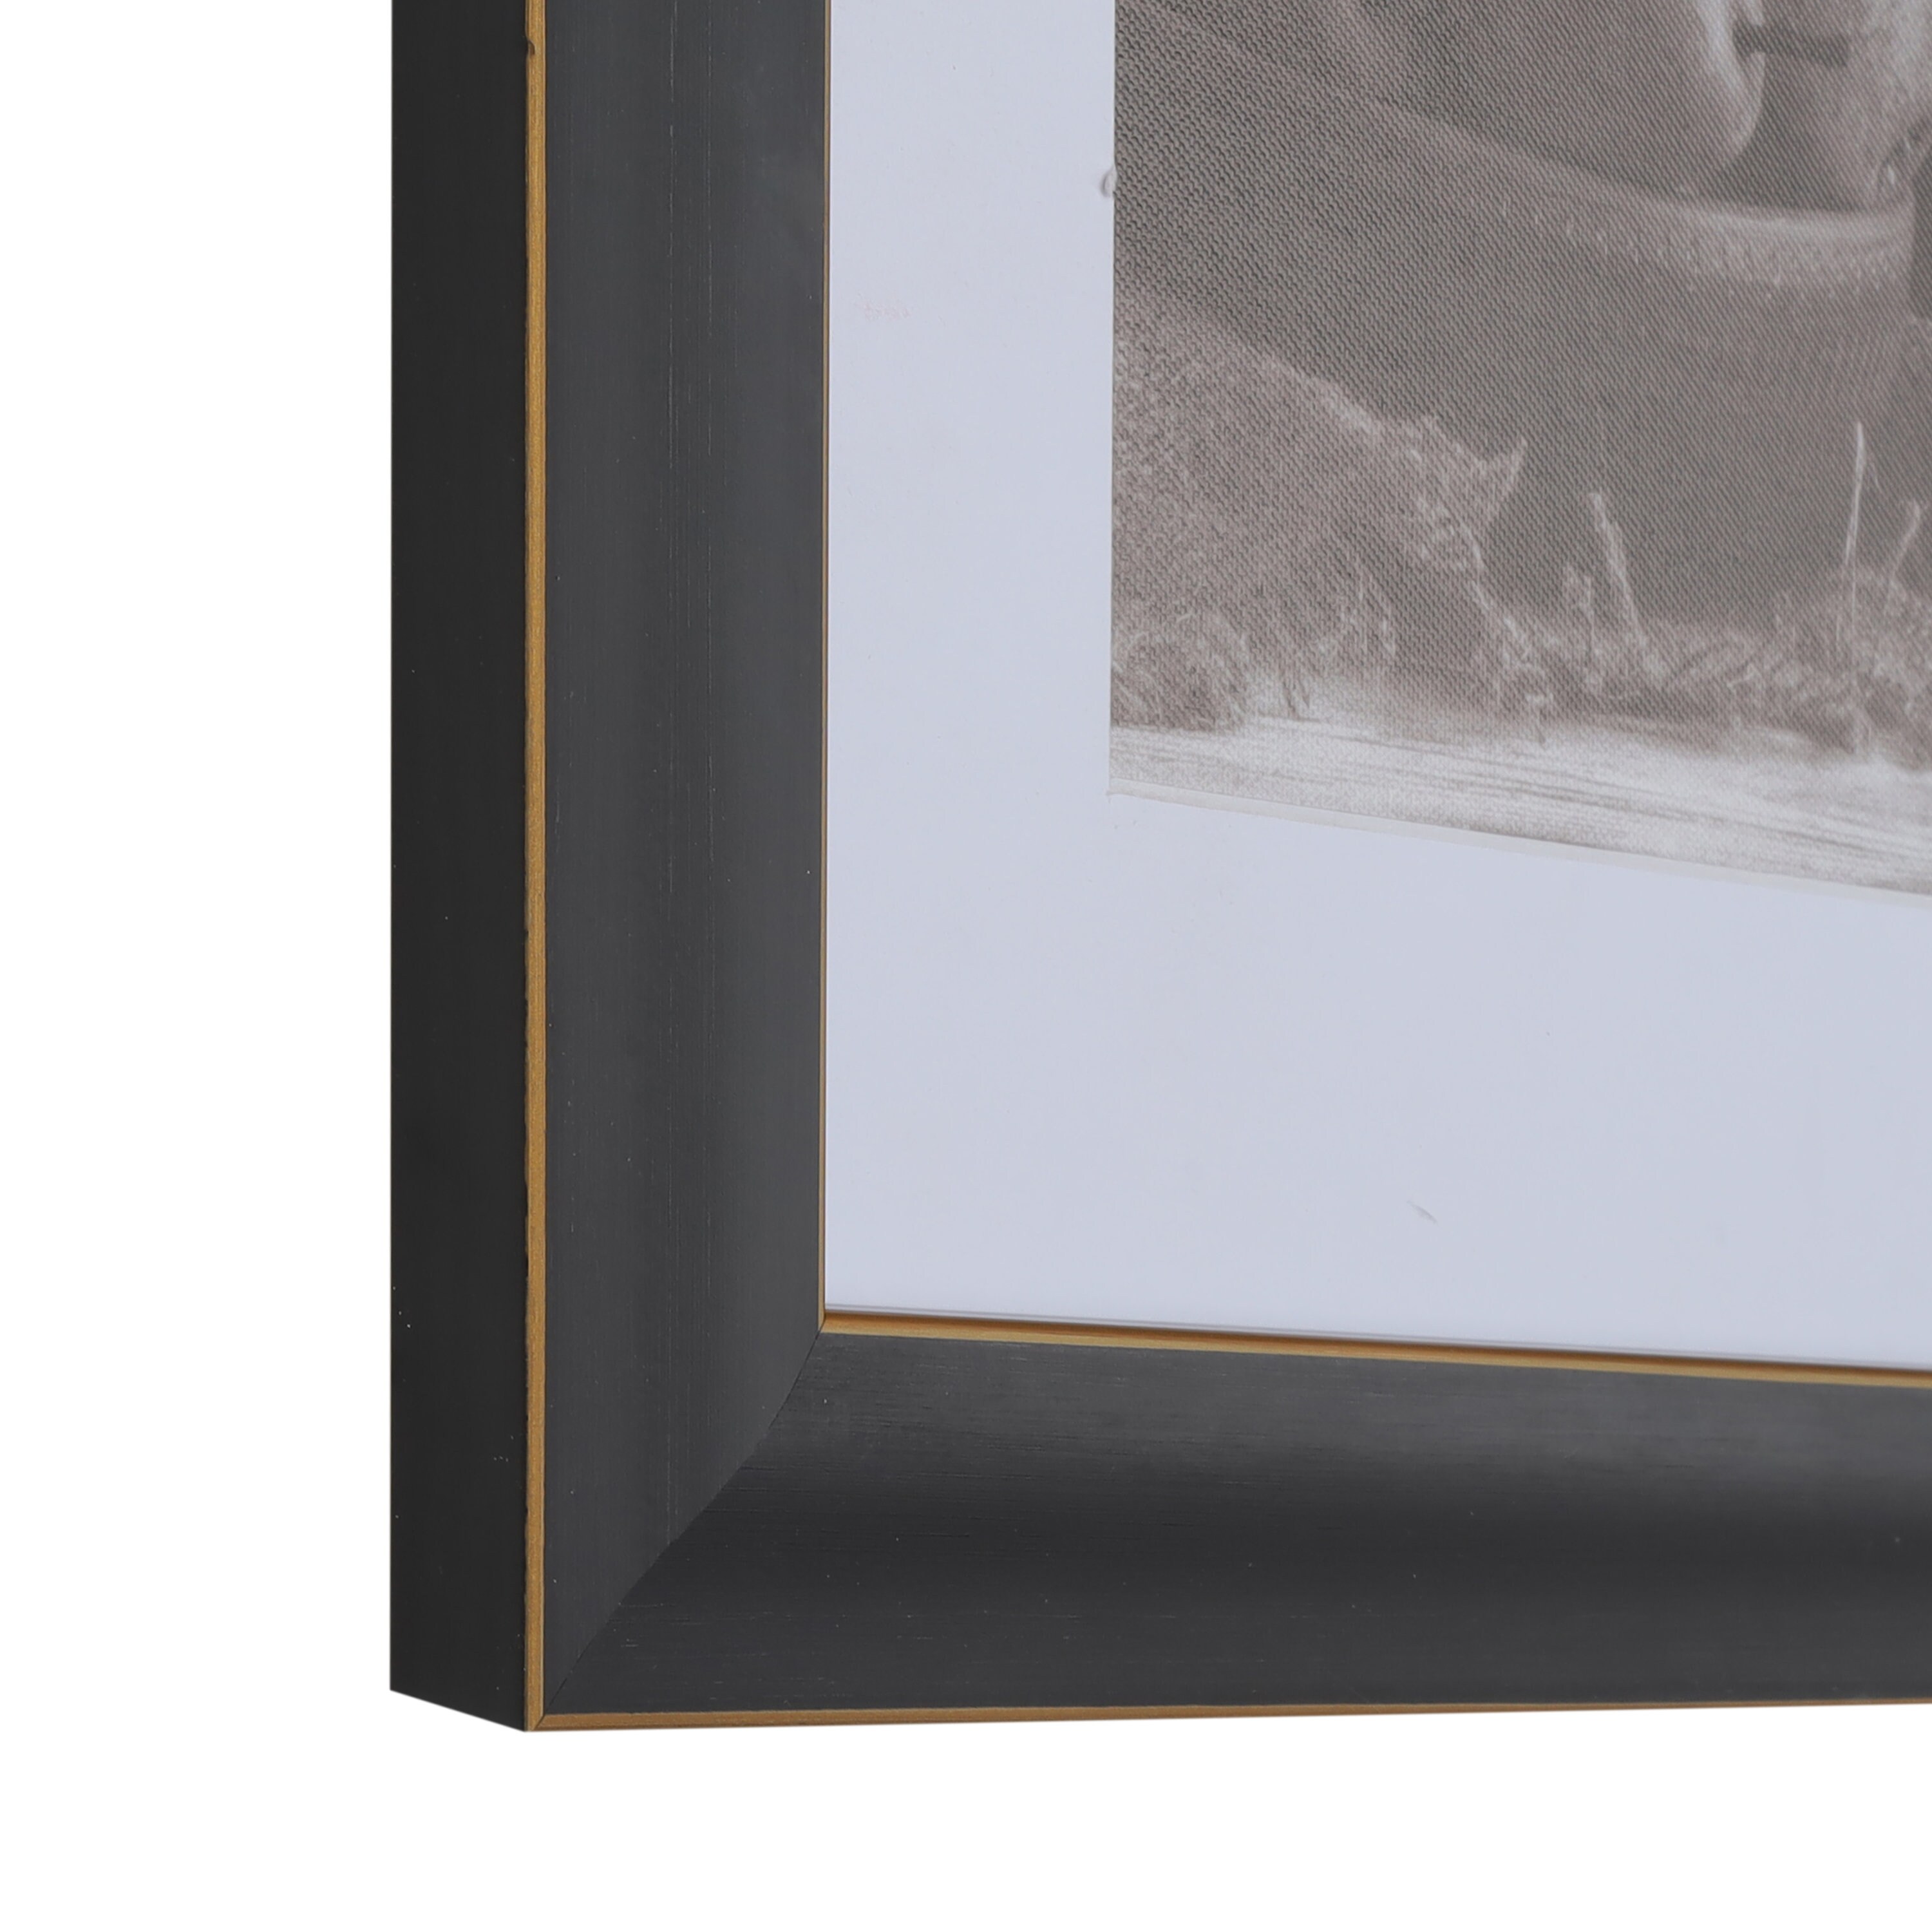 1-1/8 Polystyrene Best Seller Modern 30x40 Picture Frame. Multiple